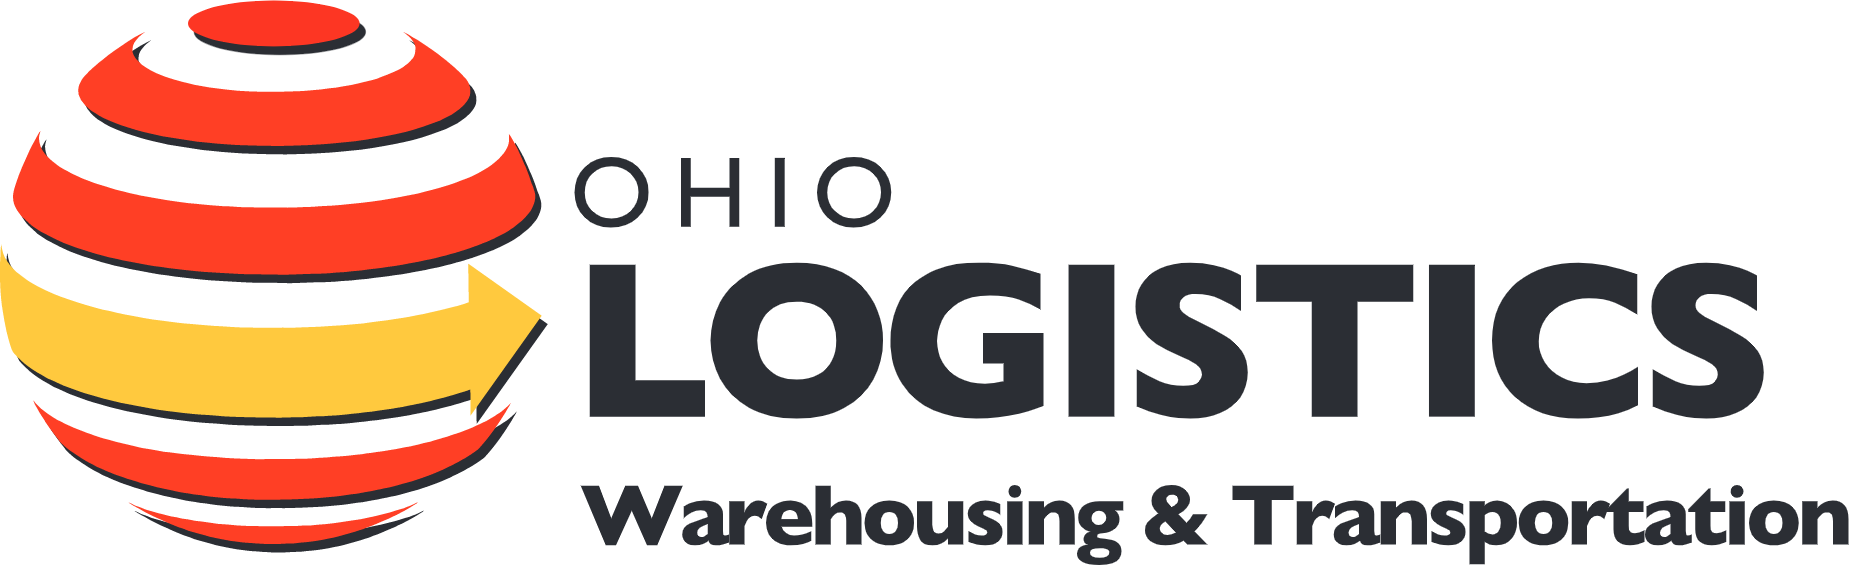 Ohio Logistics